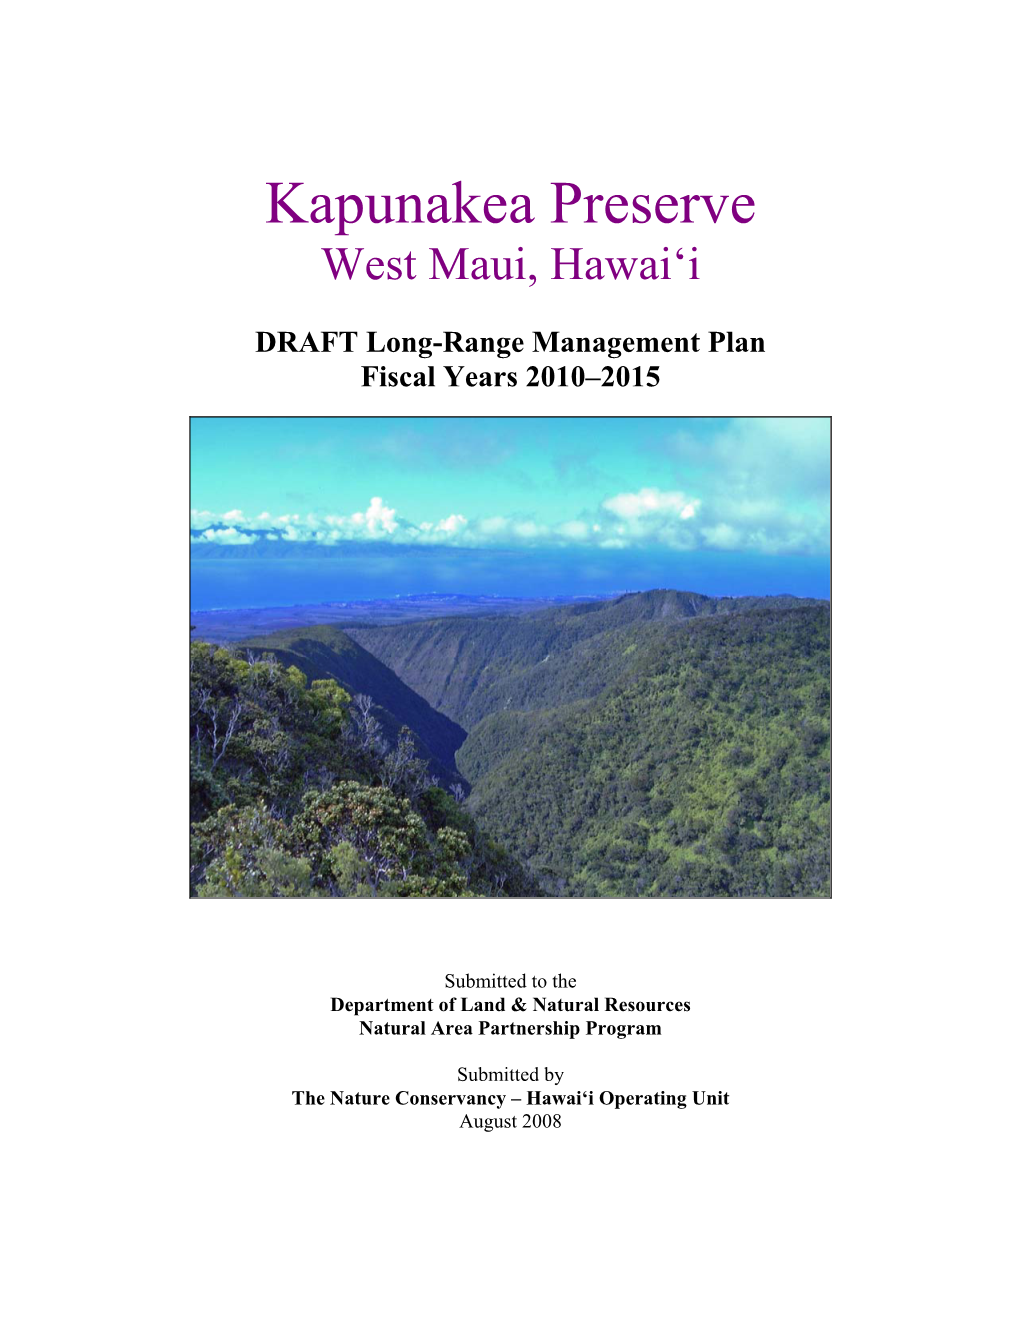 Kapunakea NAPP Long Range Management Plan